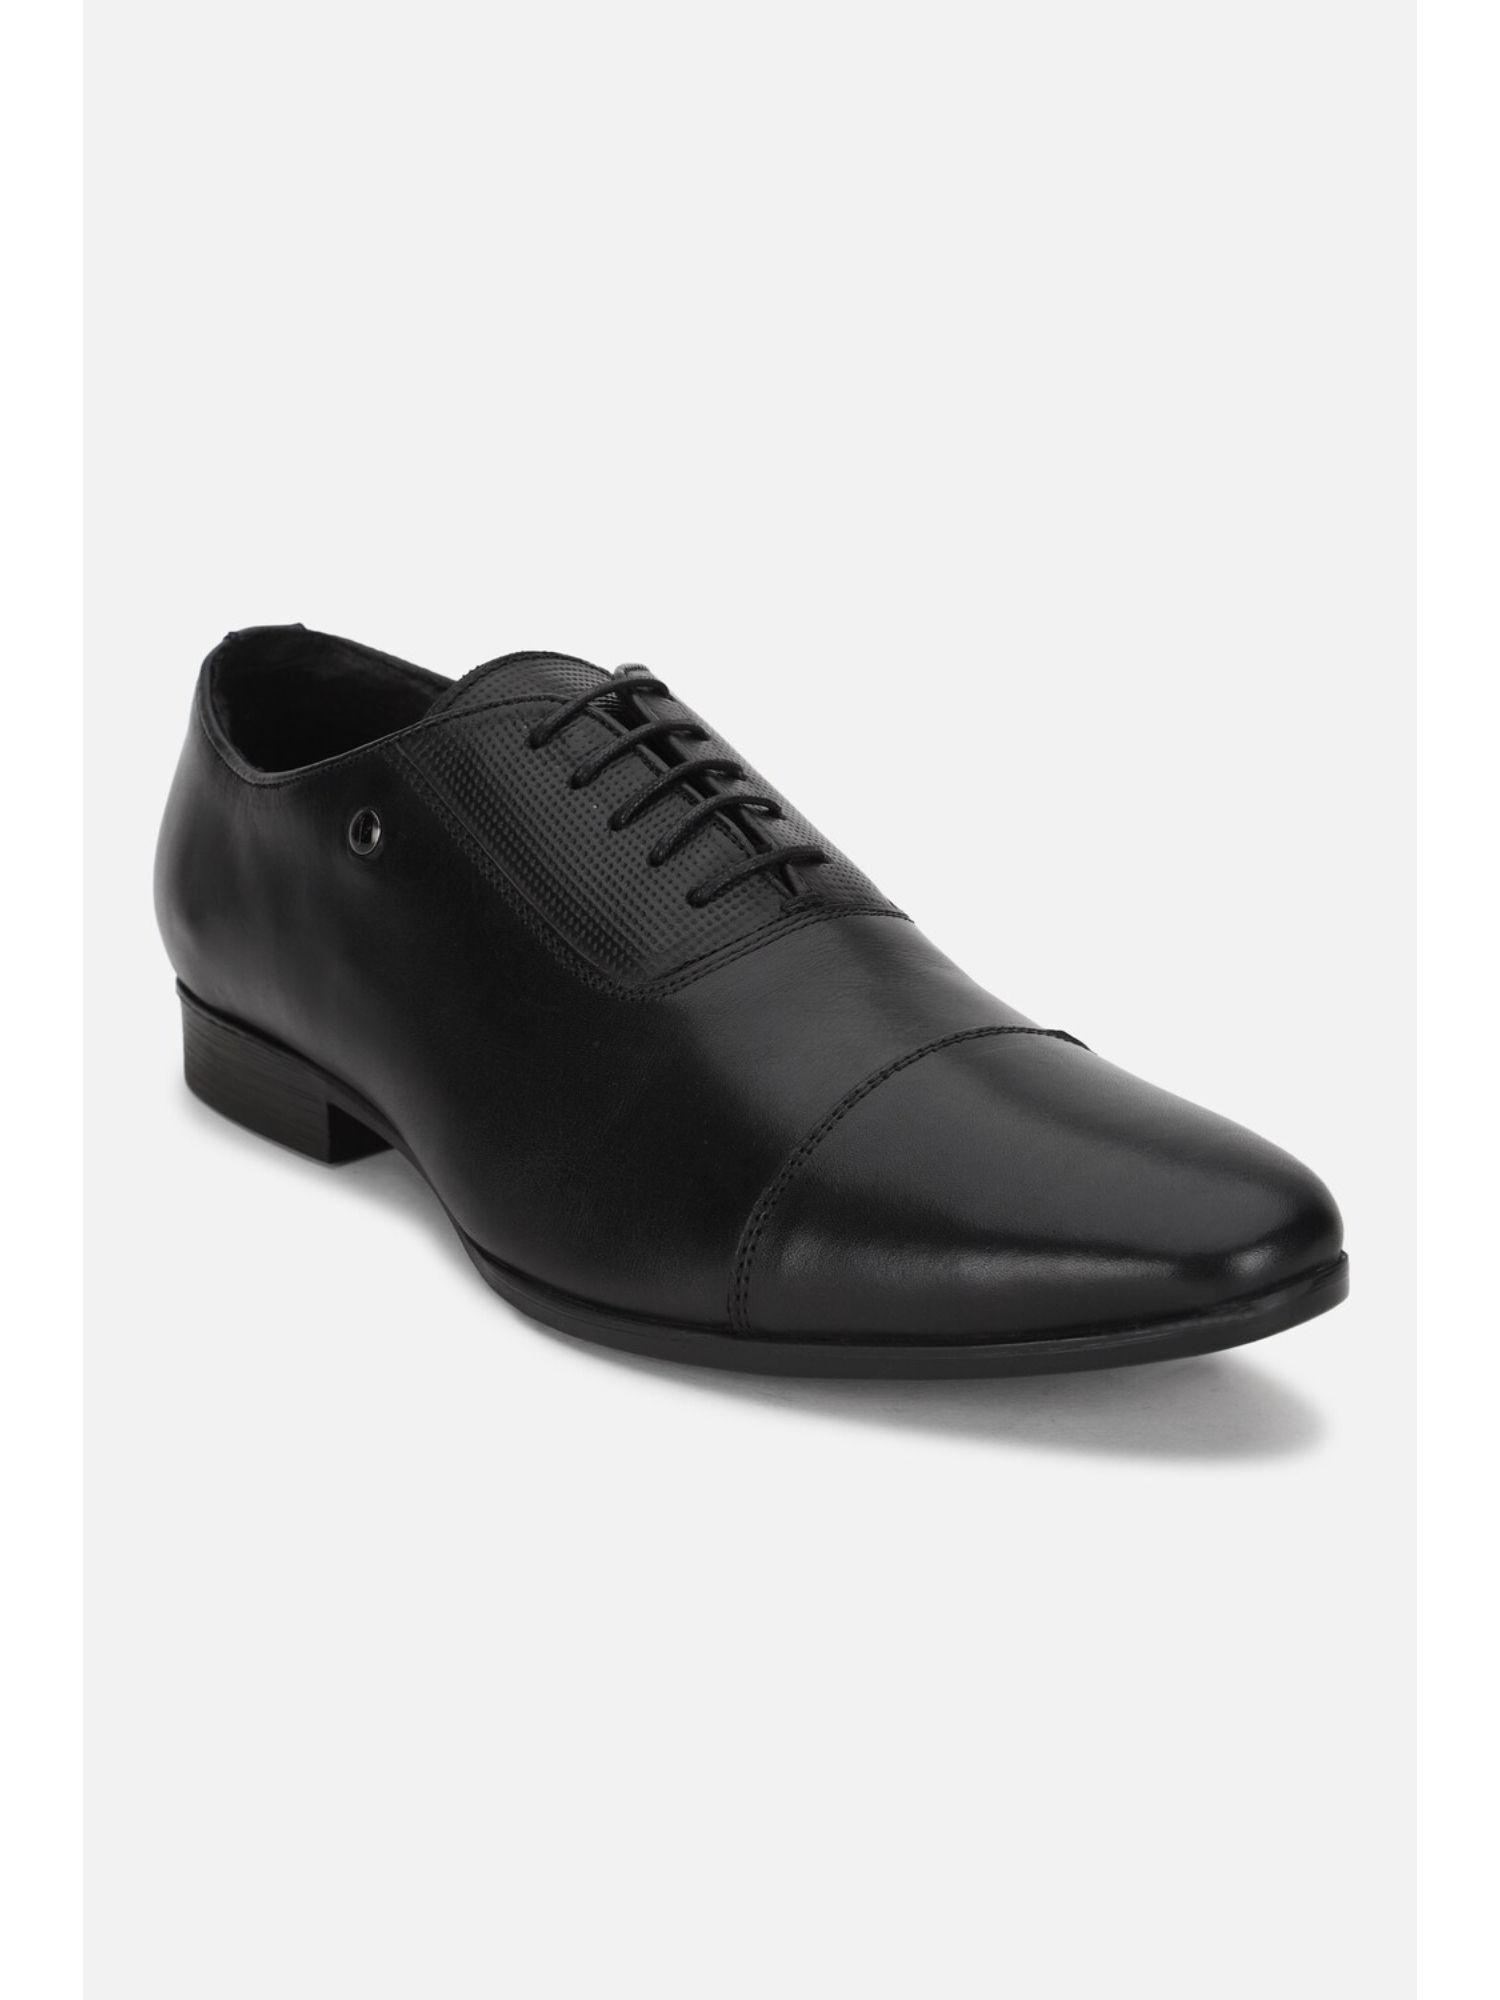 men-black-formal-oxford-shoes